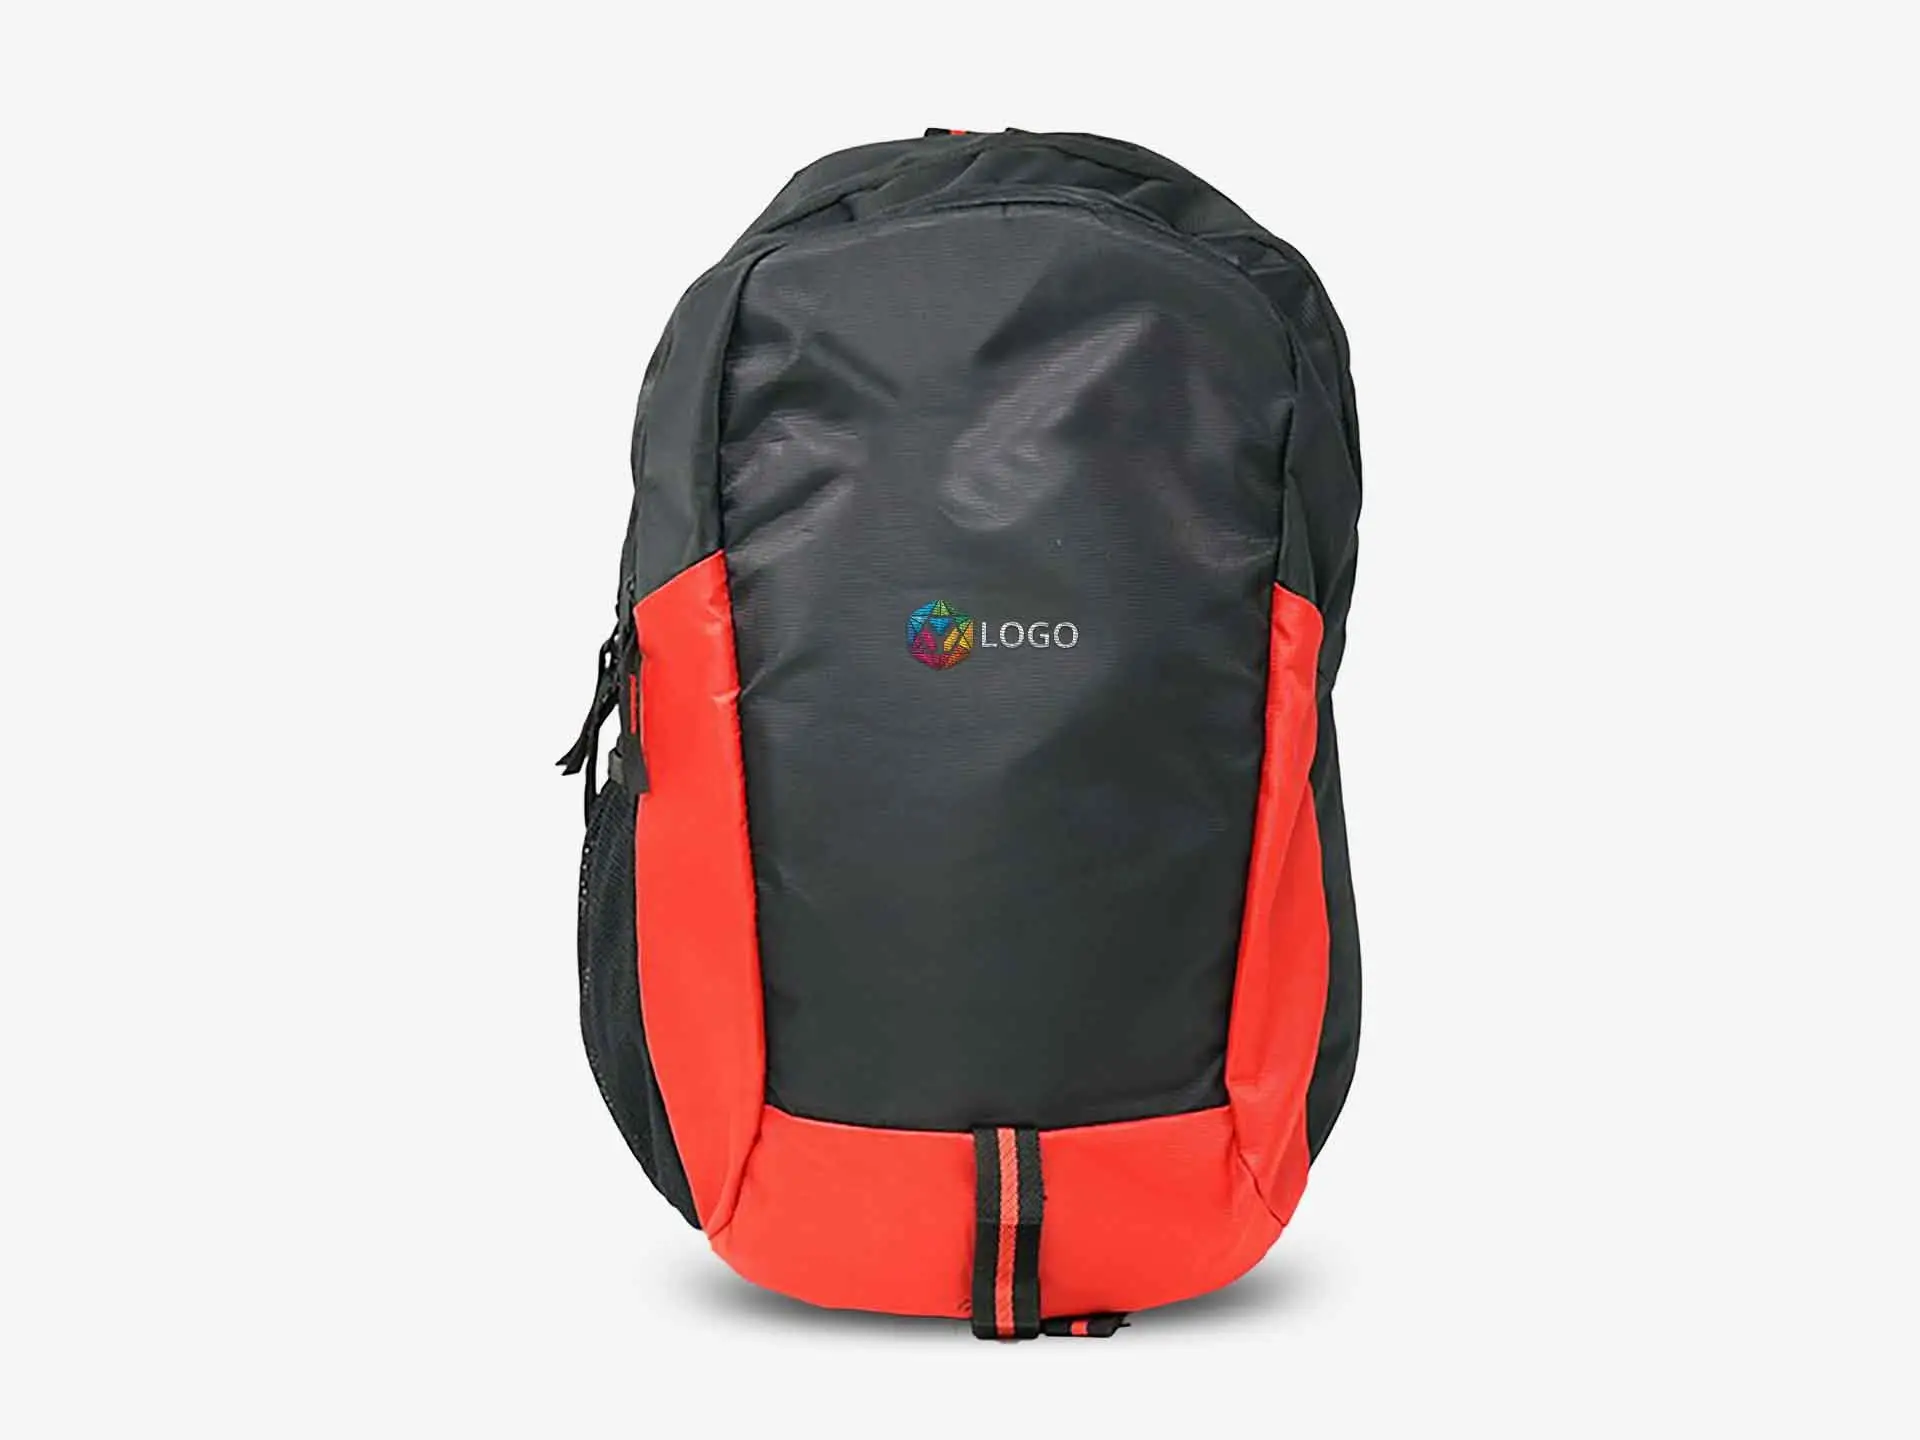 Perpetual Laptop Bag